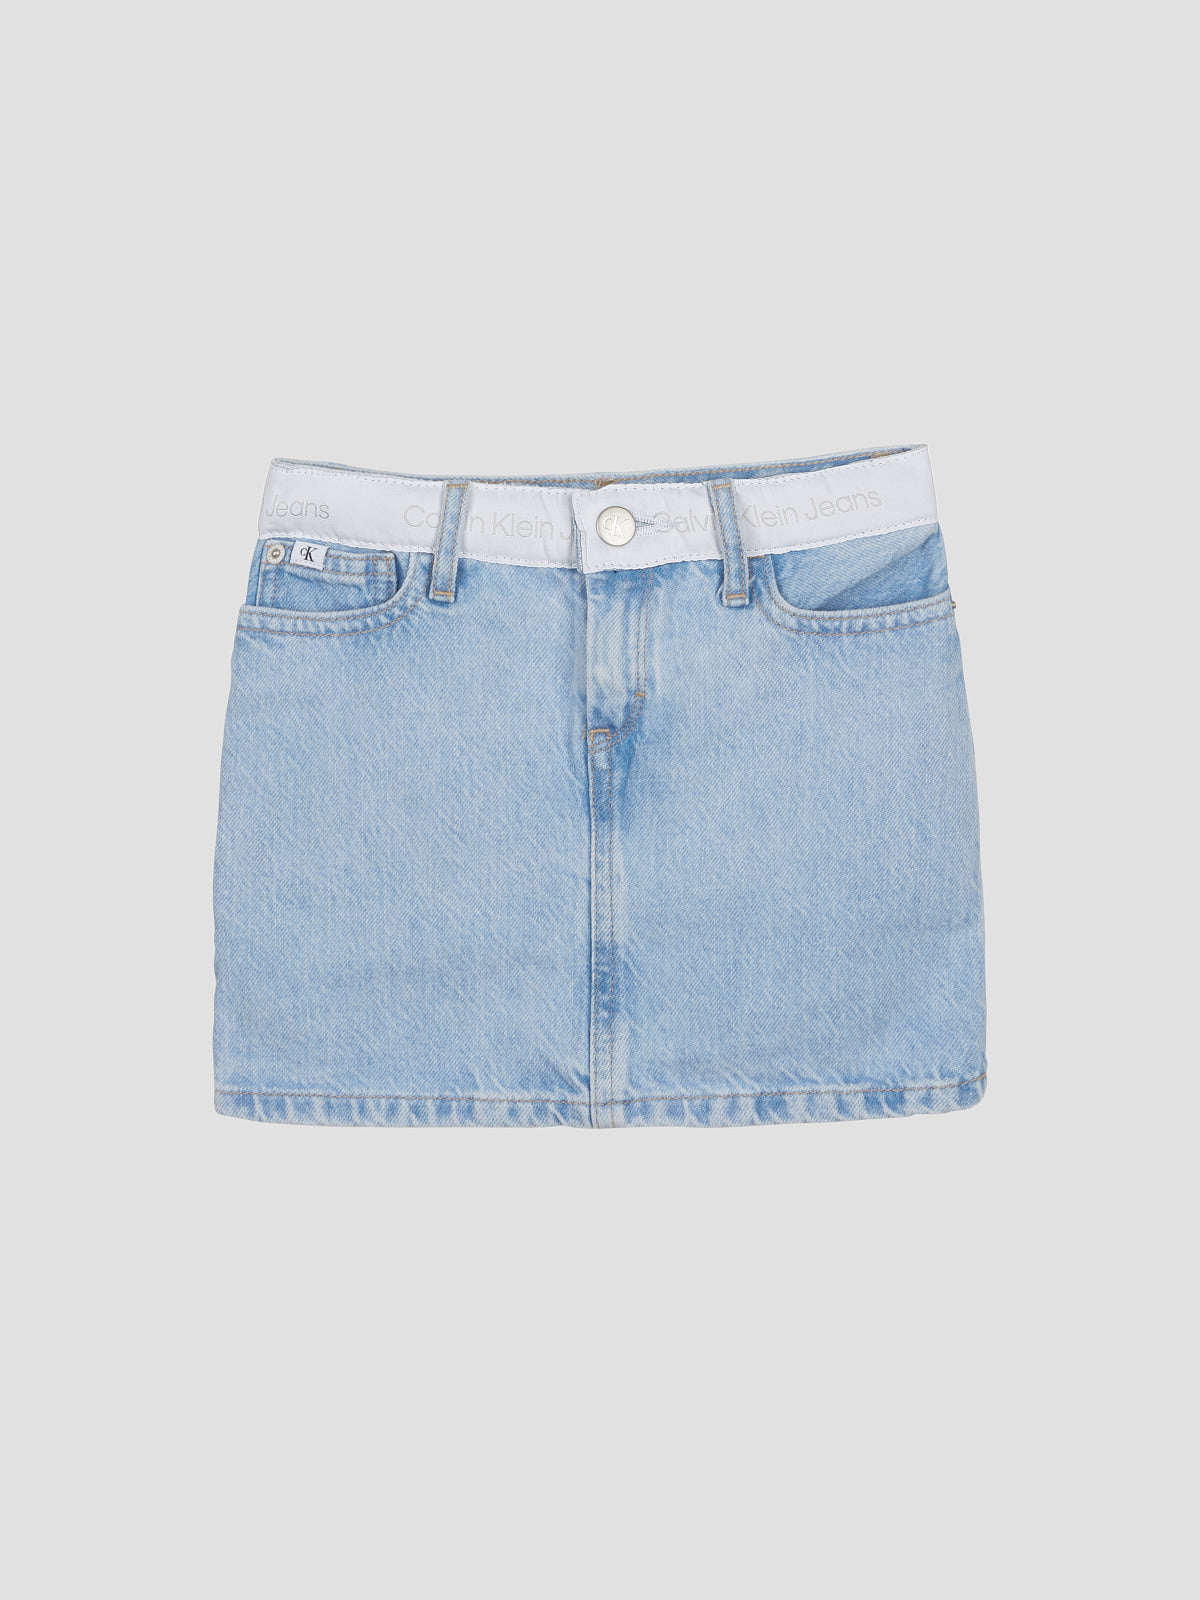 חצאית ג'ינס מיני ממותגת / ילדות- Ck|קלווין קליין